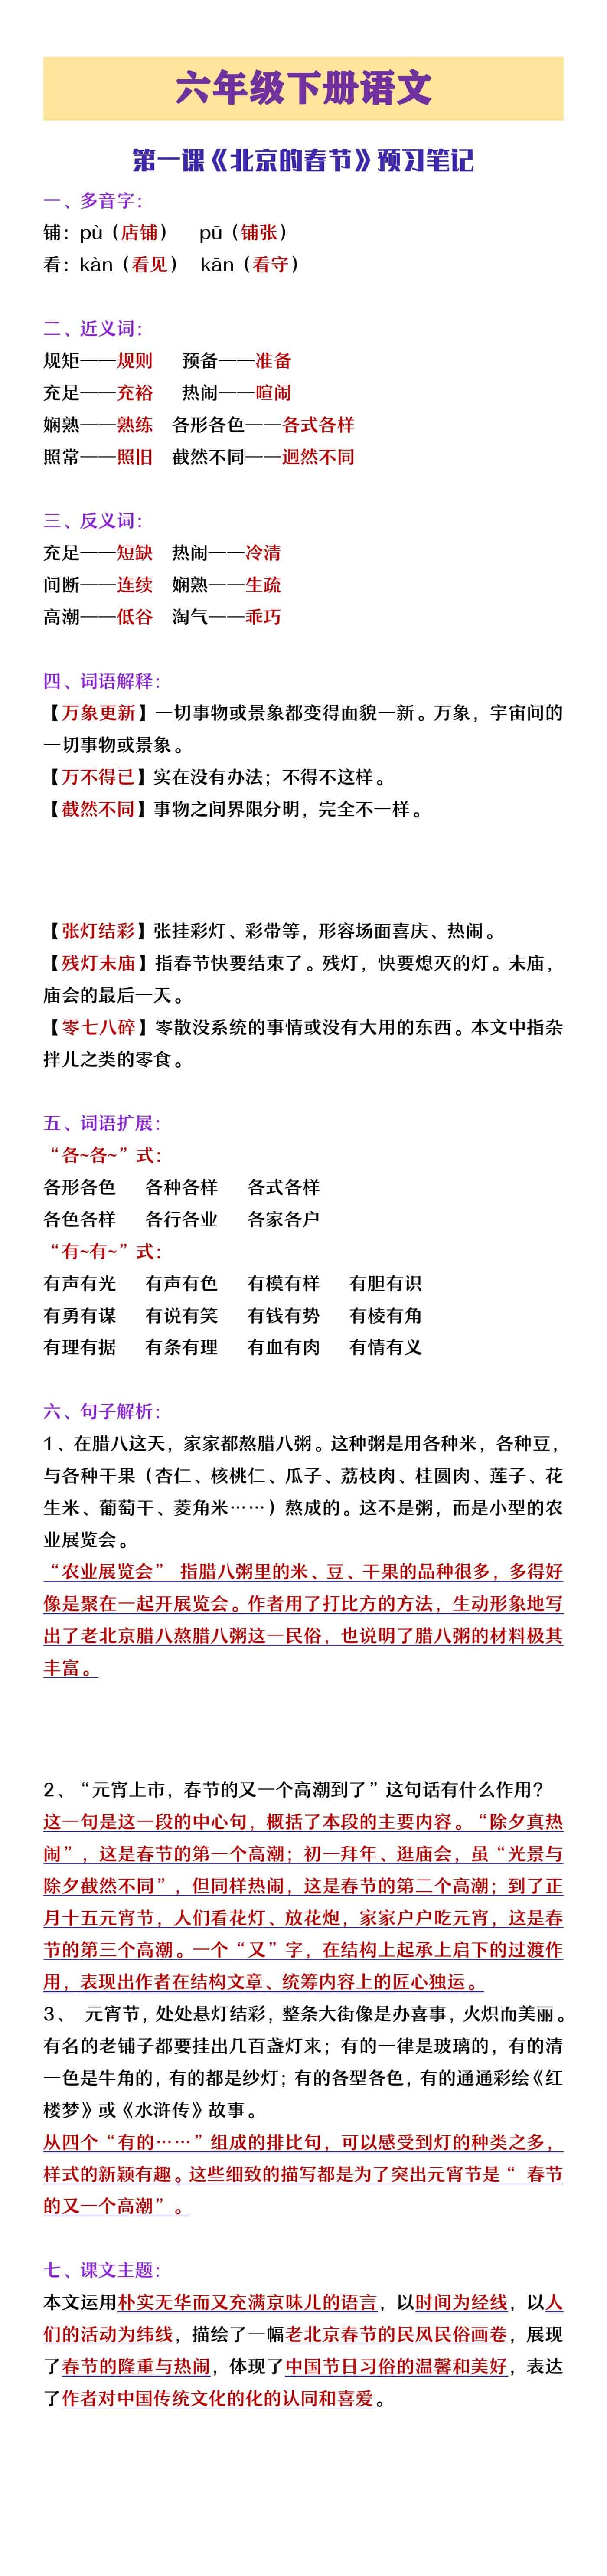 六年级下册语文第一课《北京的春节》预习笔记